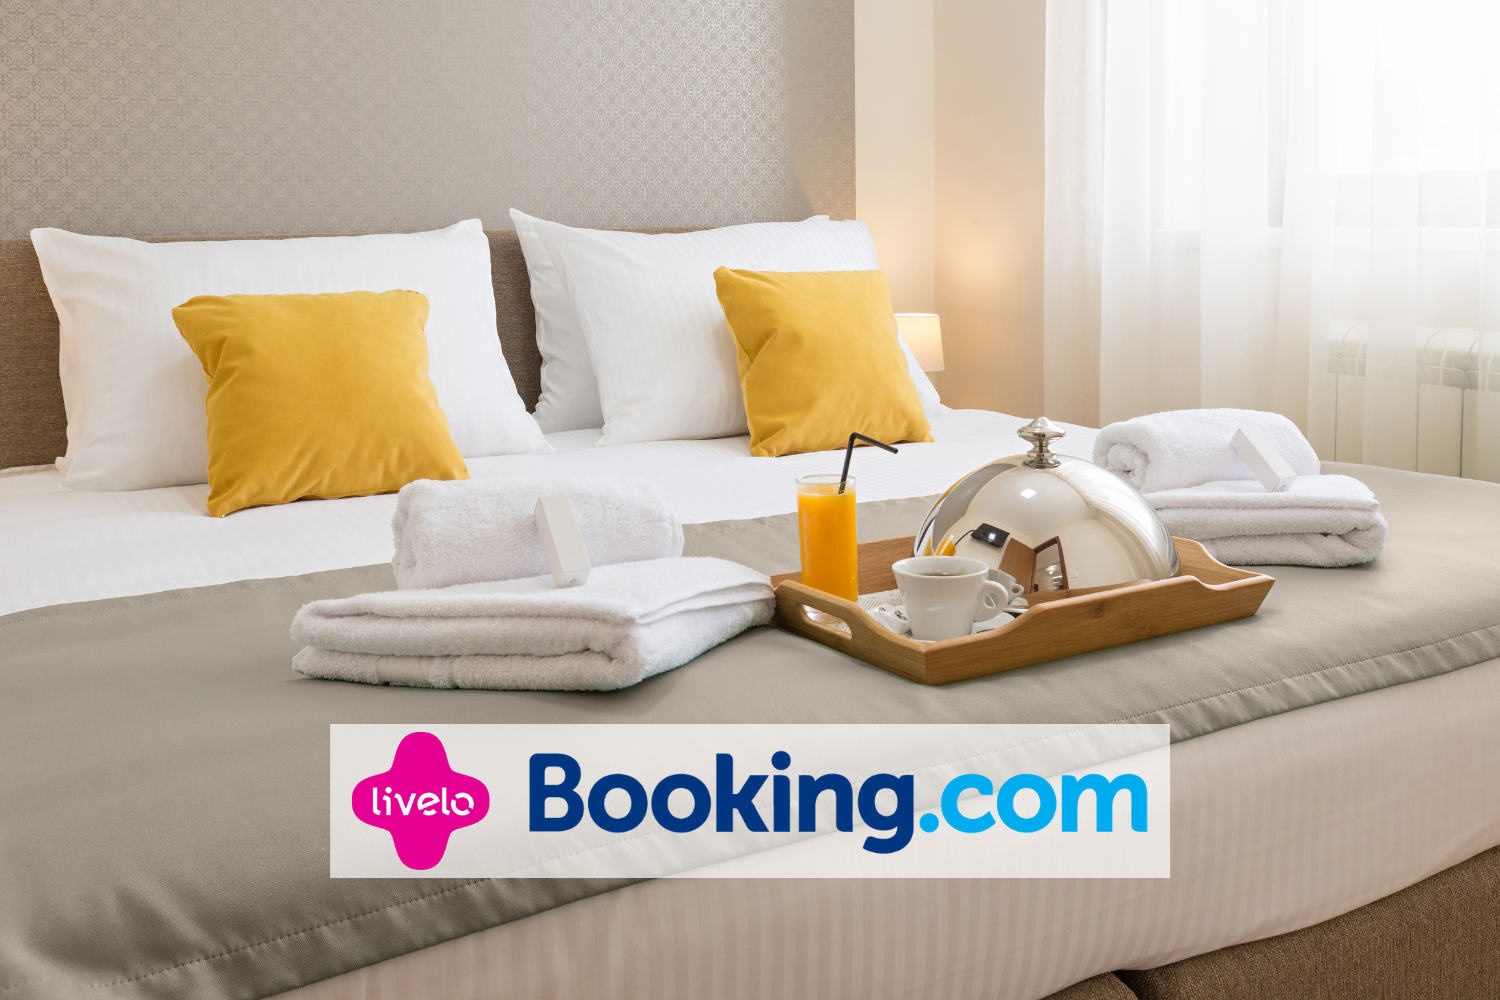 Booking.com e Livelo